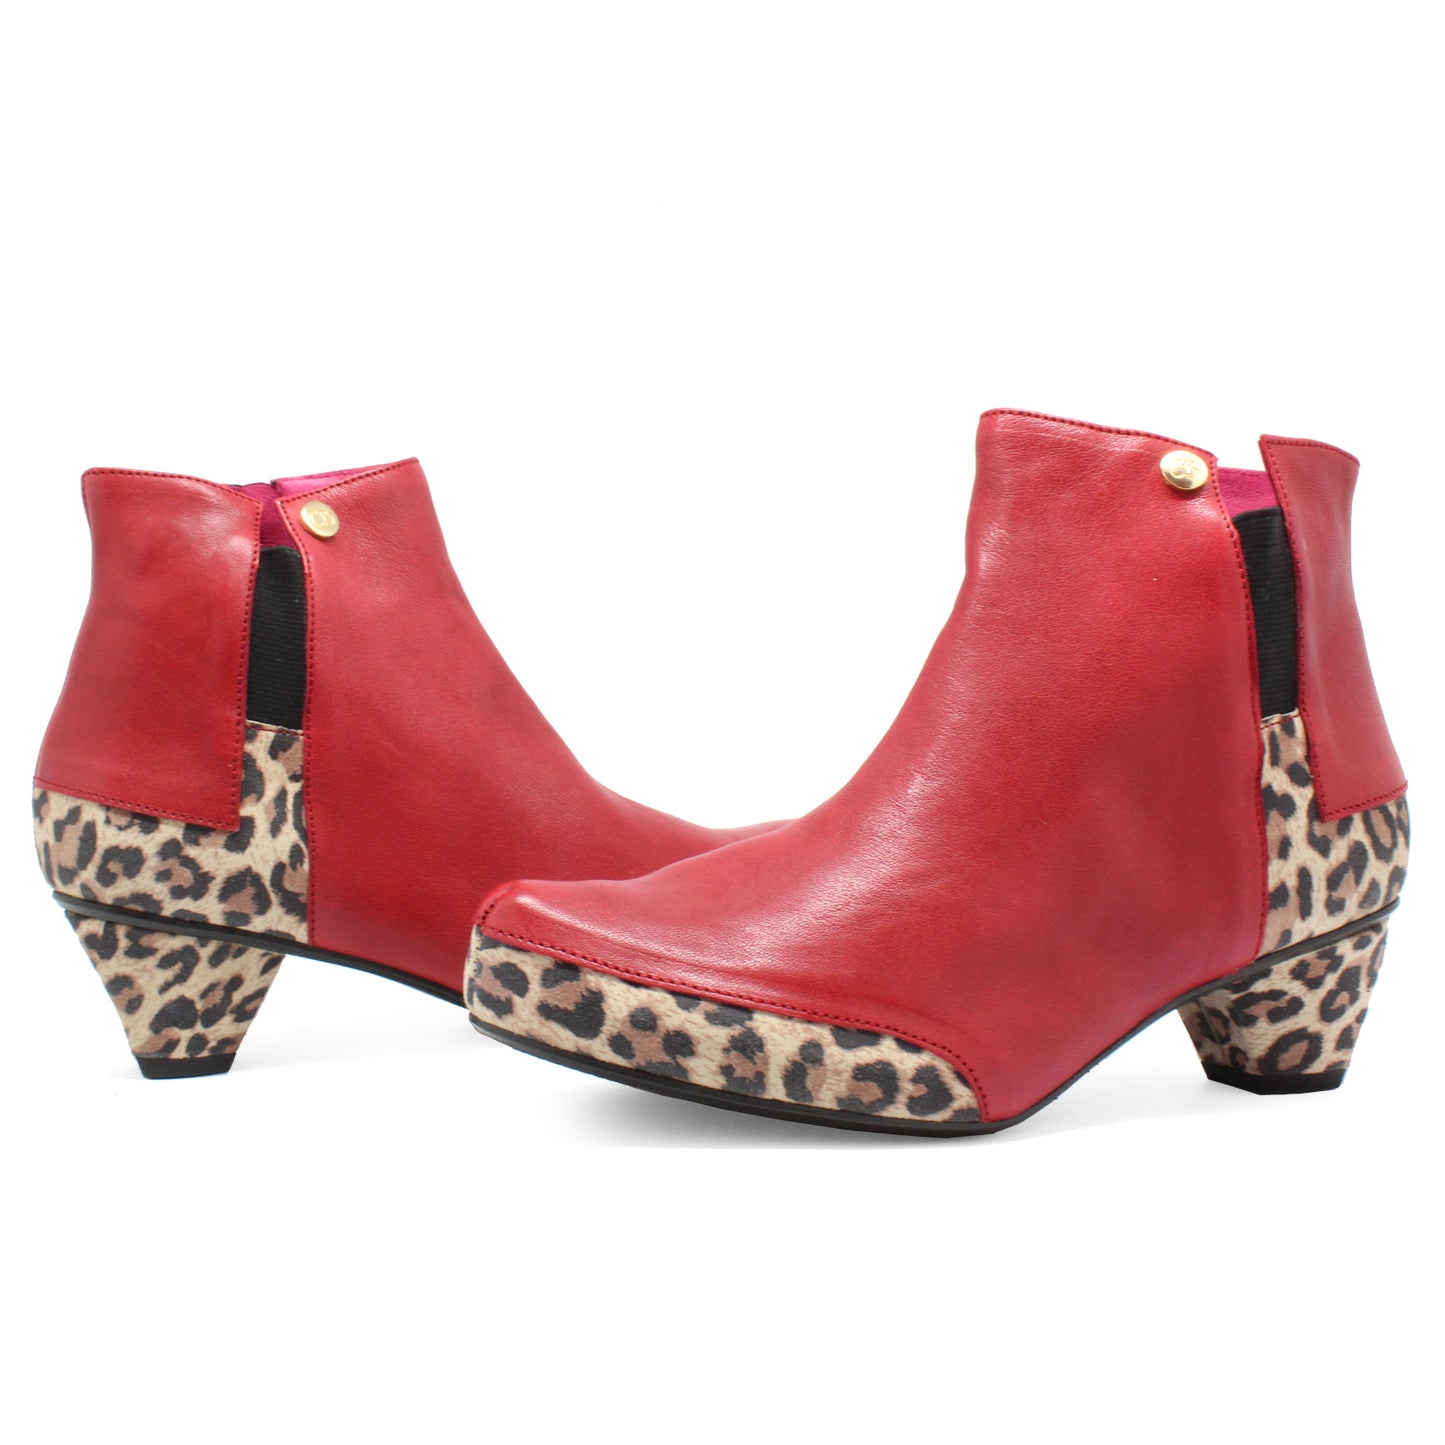 La Rui - Red Leopard- Ankle boot